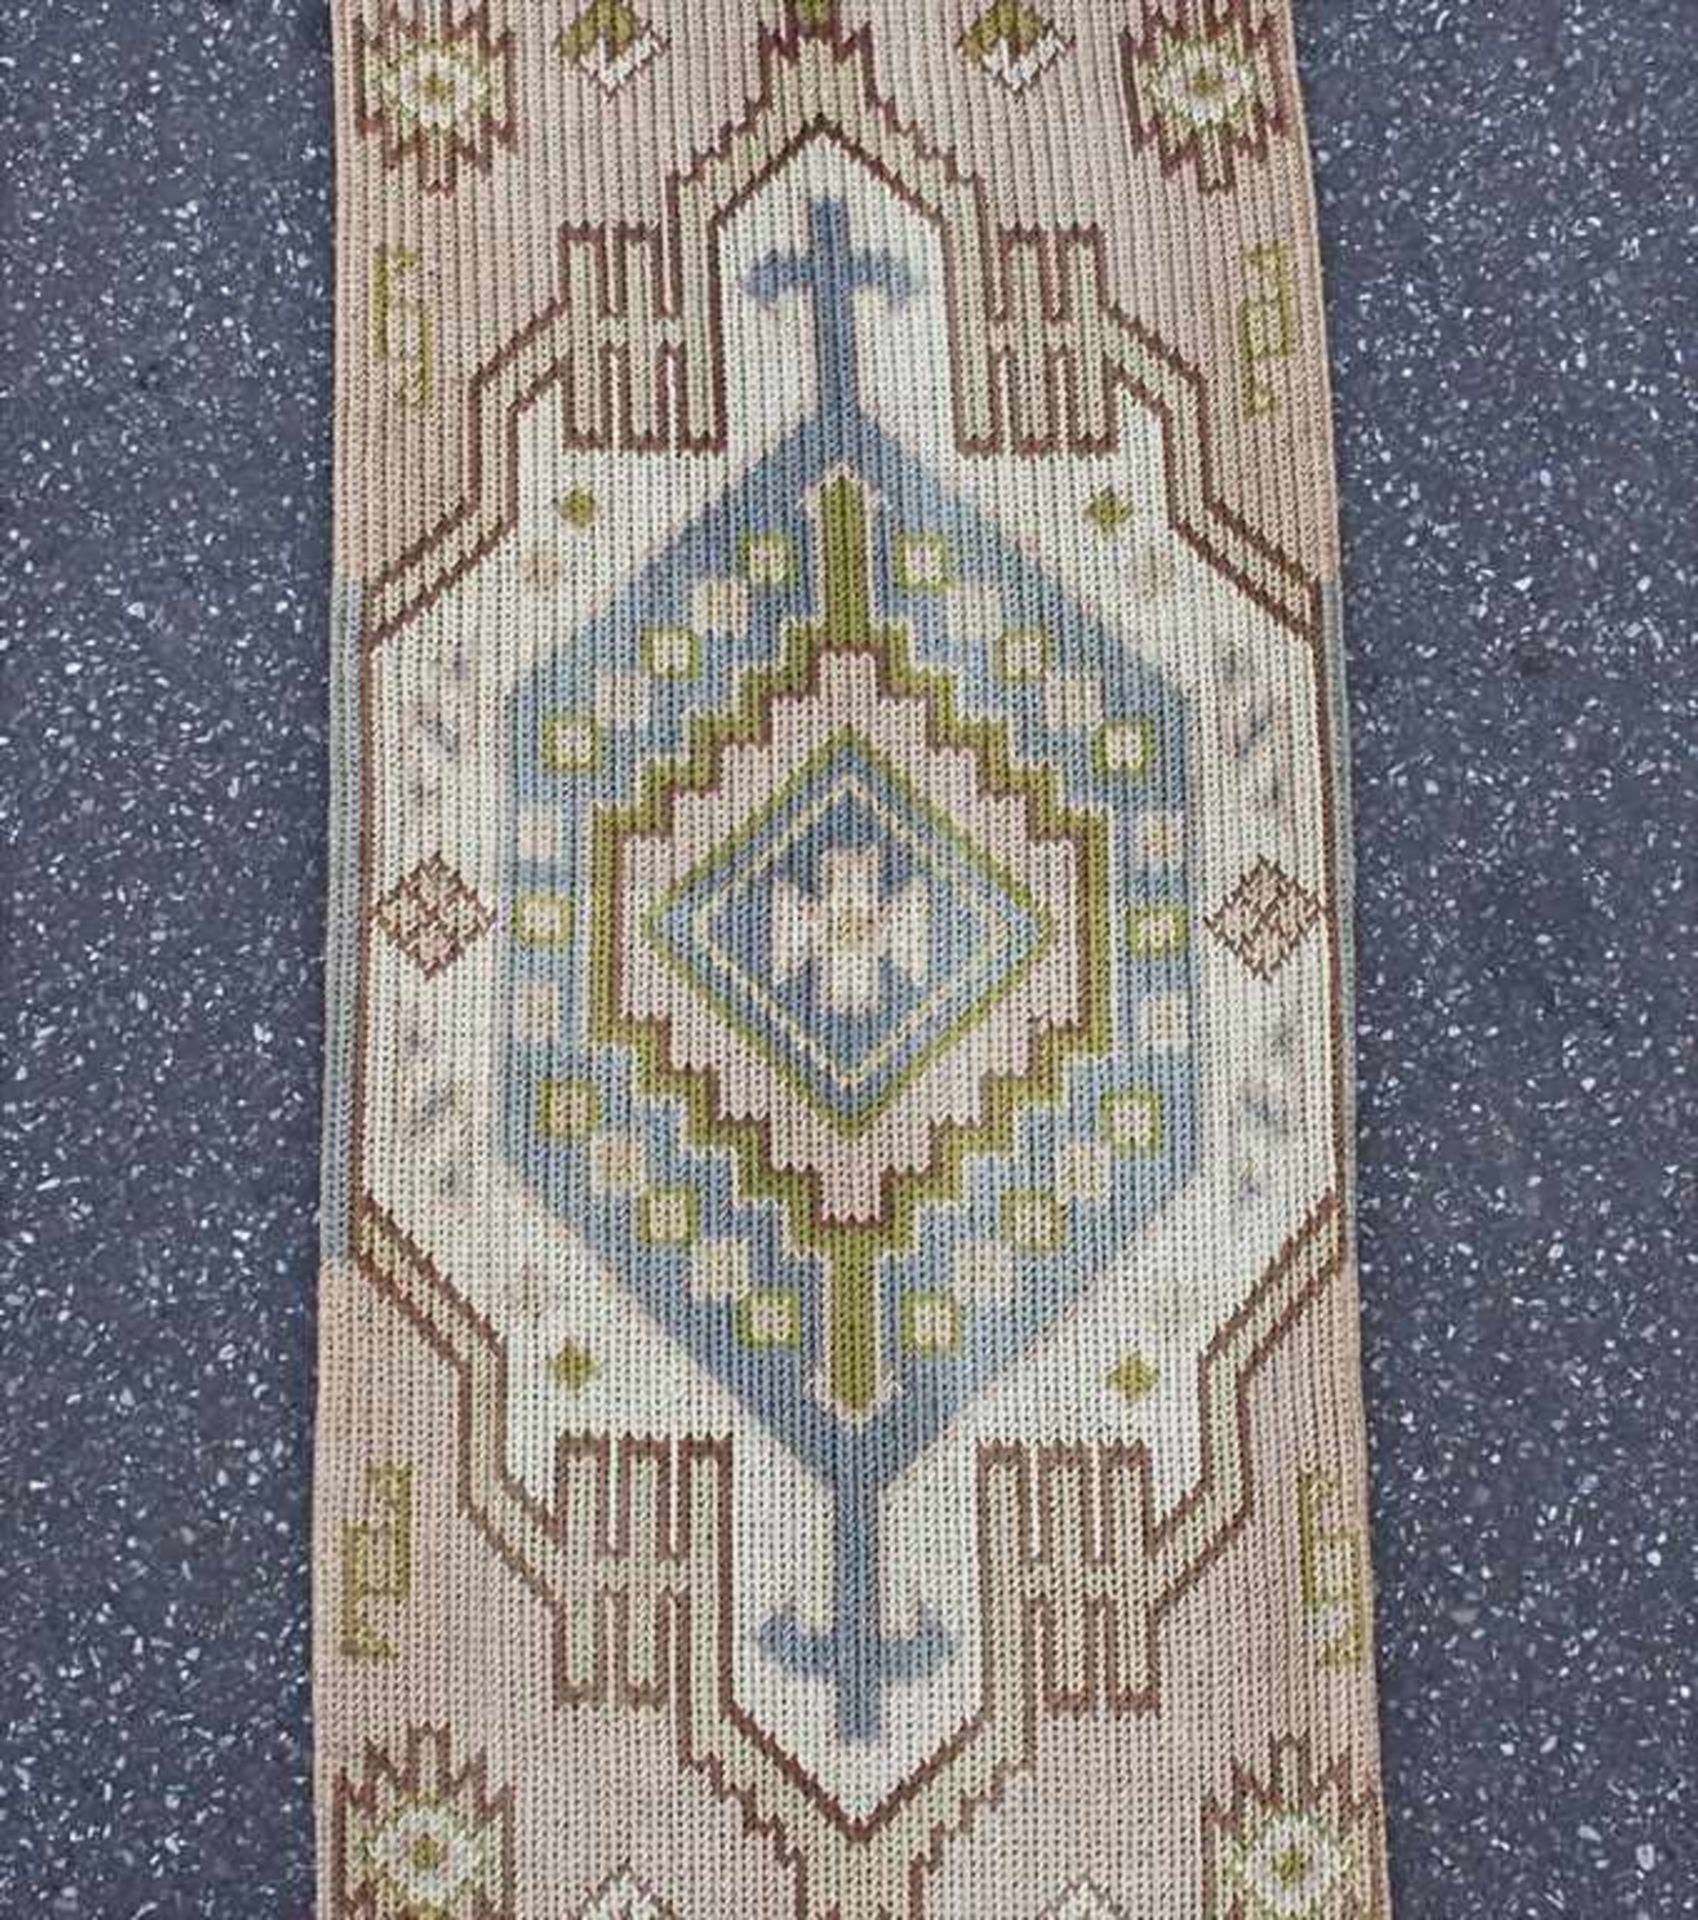 Textile Türrahmung/Textile Doorframe, Jugendstil, um 1900/1910< - Image 3 of 4